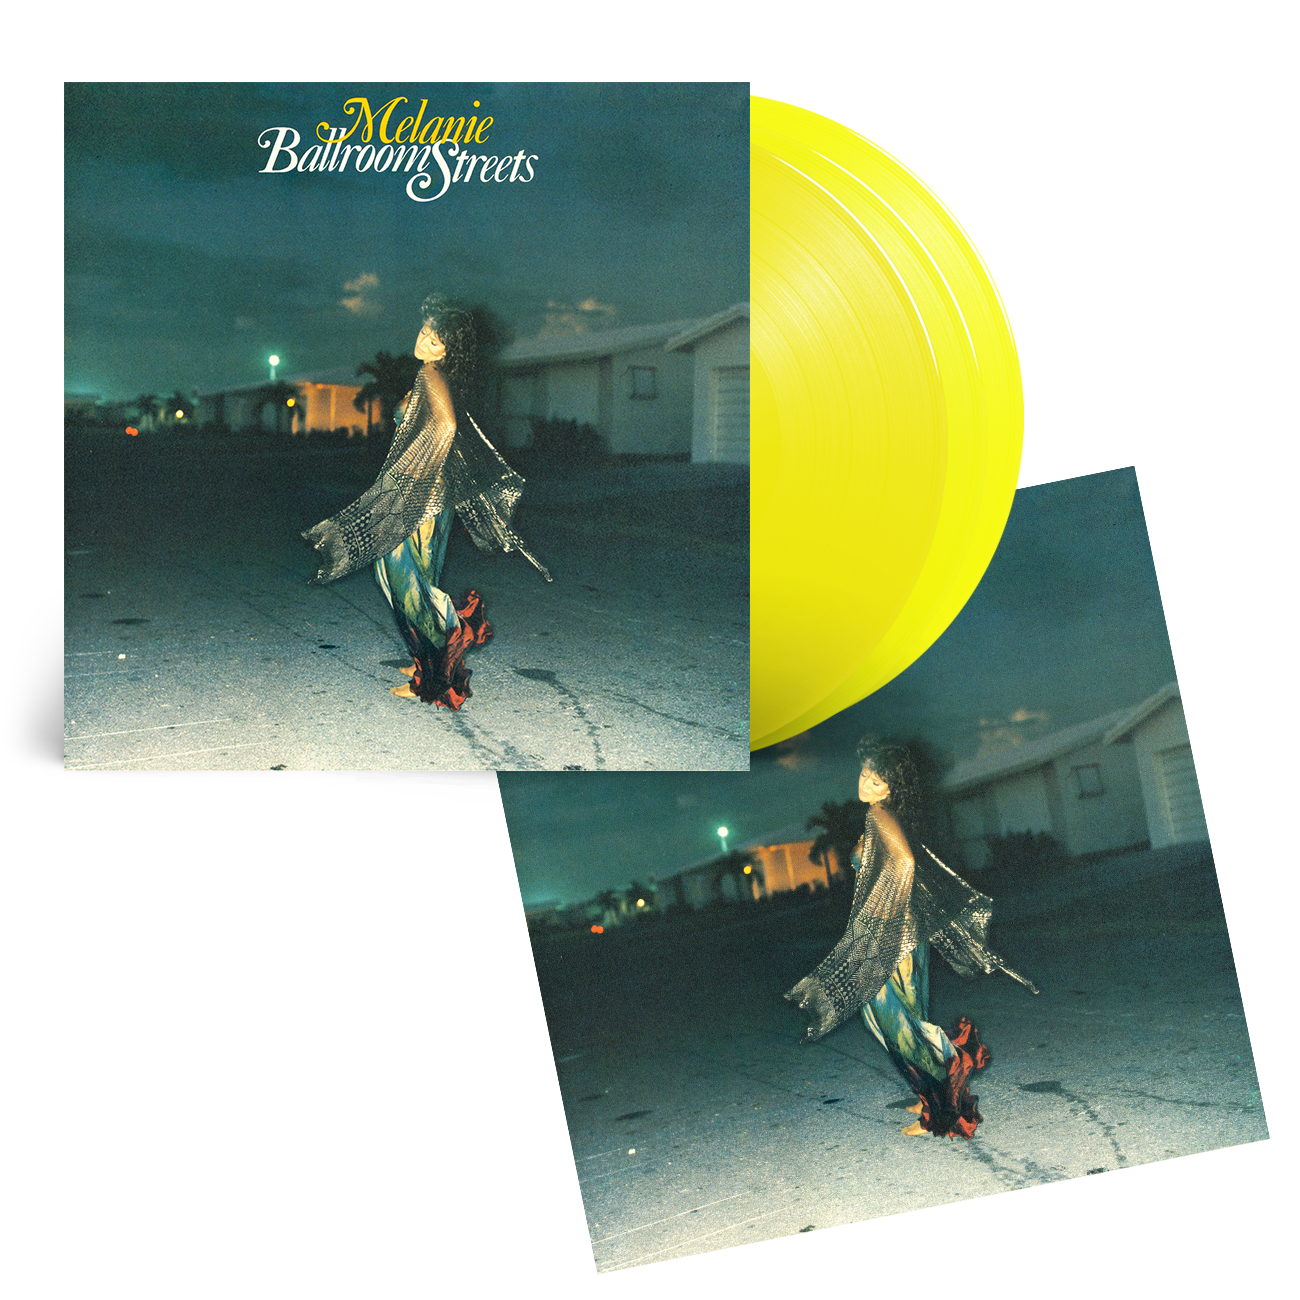 Ballroom Streets: Mustard Yellow Vinyl 2LP & Exclusive Art Print [100 Copies Only]